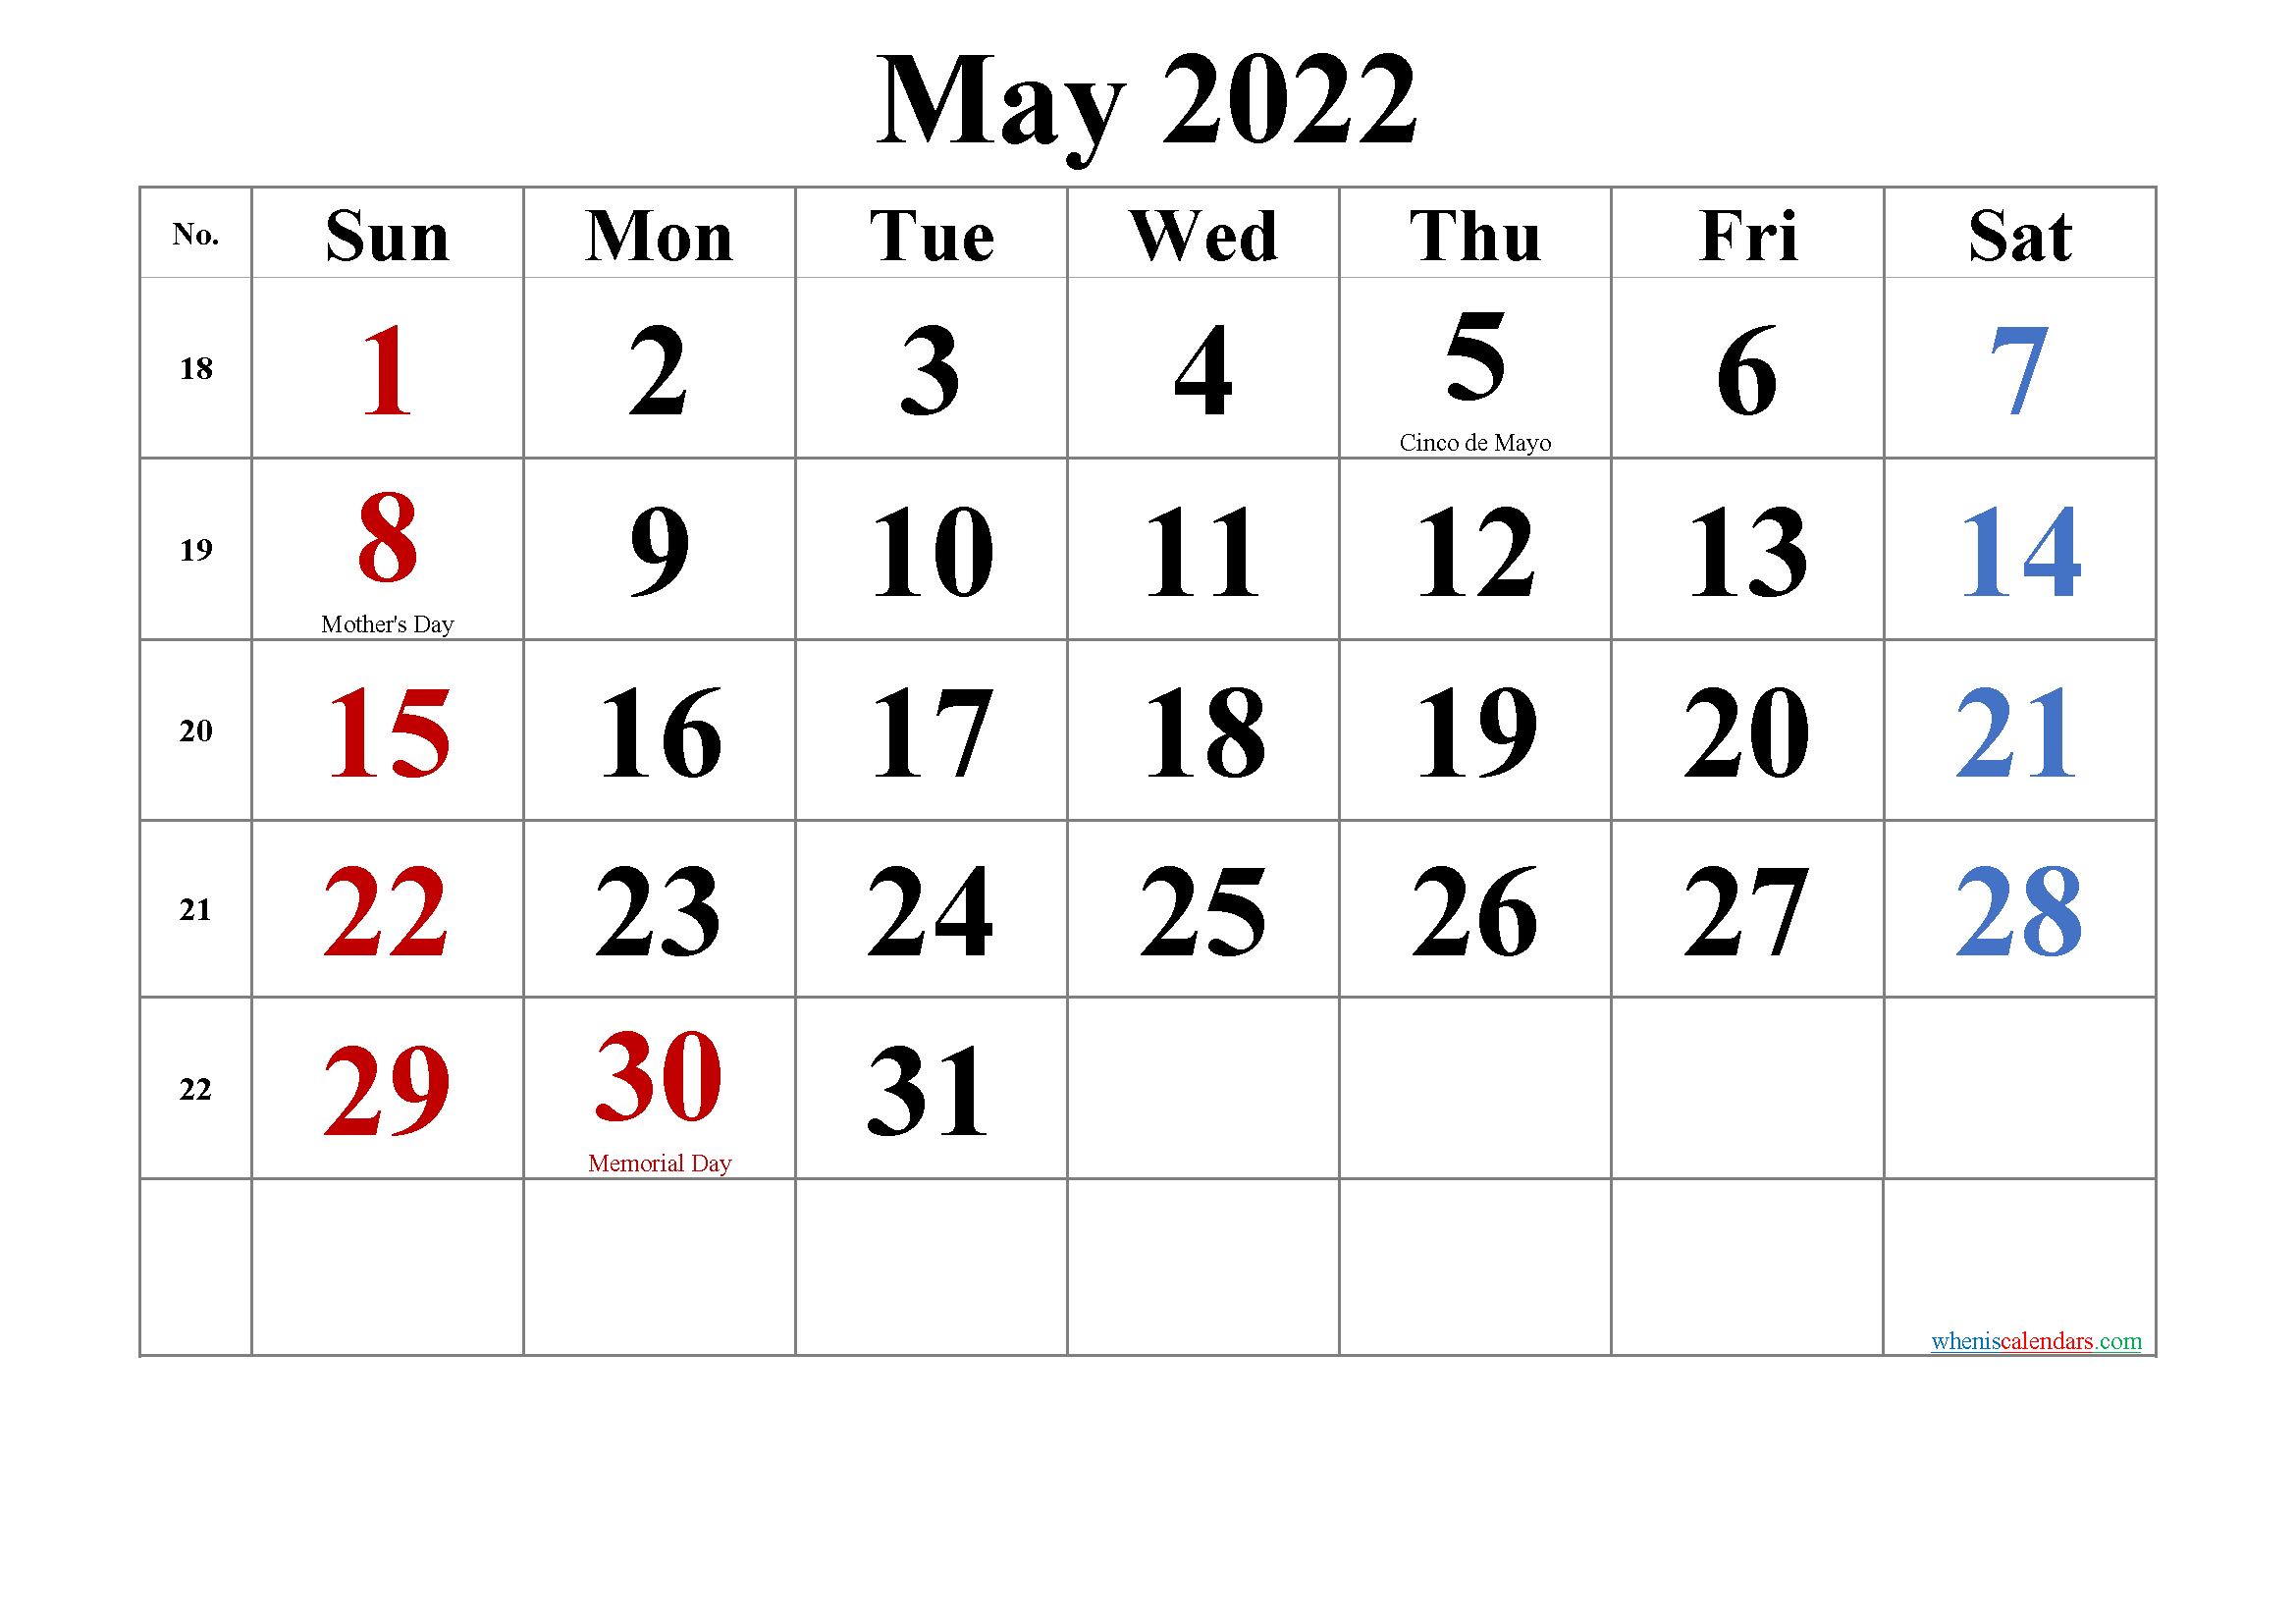 Get April 6 2022 Calendar